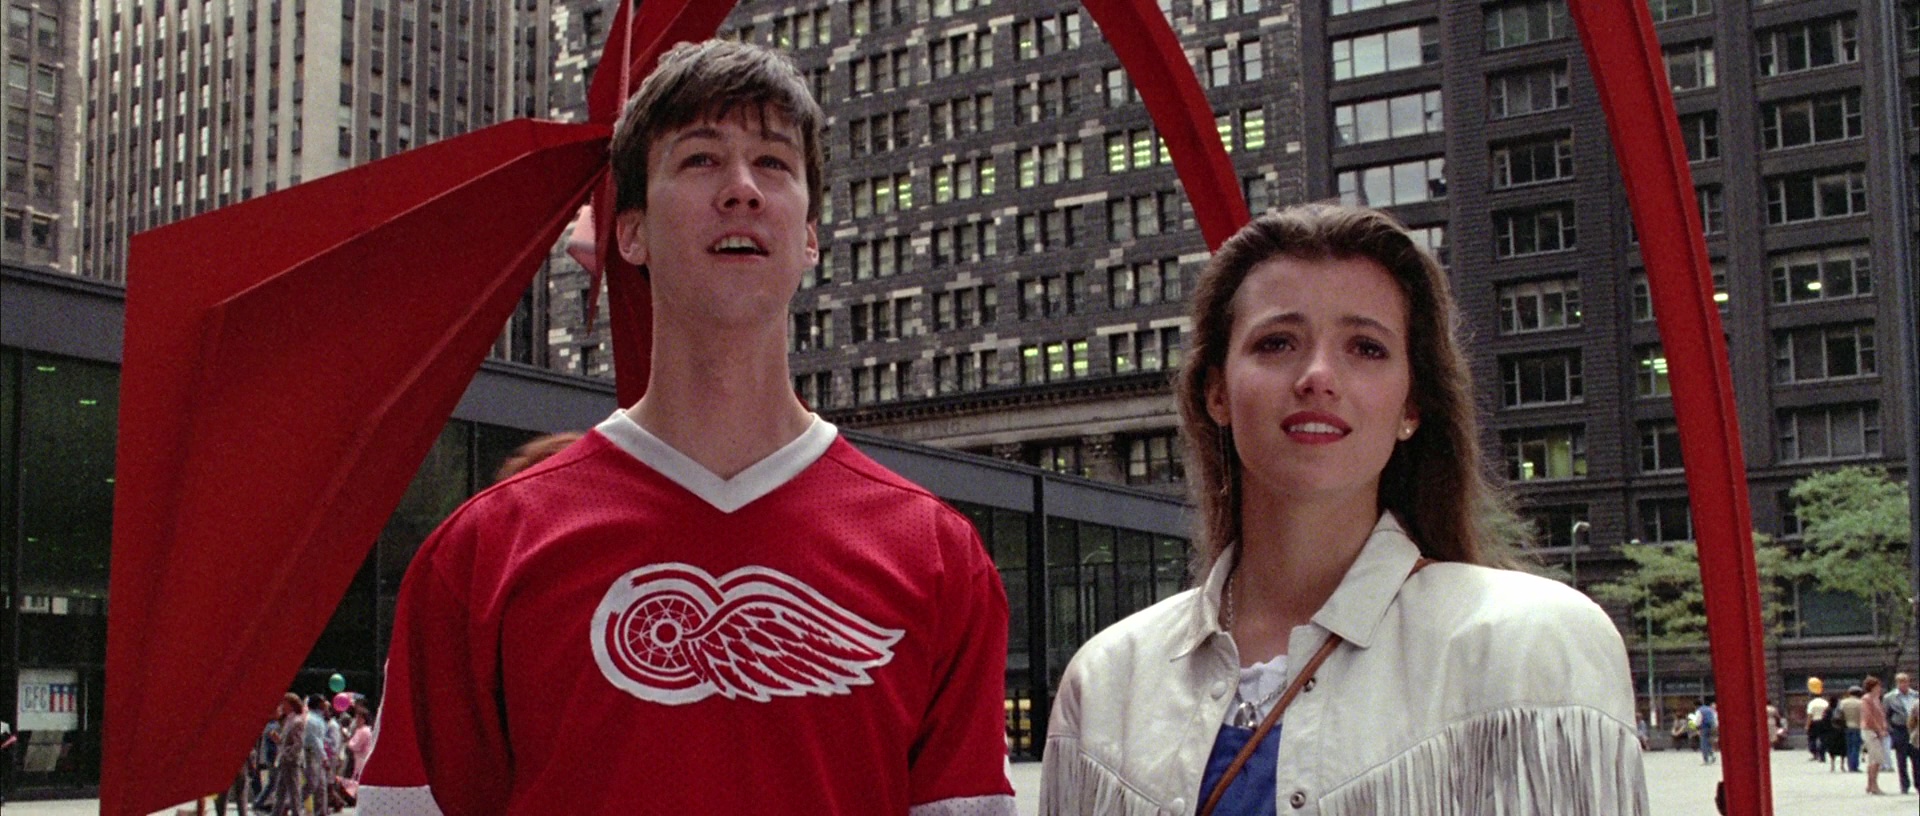 Выходной ферриса бьюлера. Ferris Bueller's Day off 1986. «Феррис бьюллер берет выходной» (1986). Каникулы Ферриса Бьюлера.